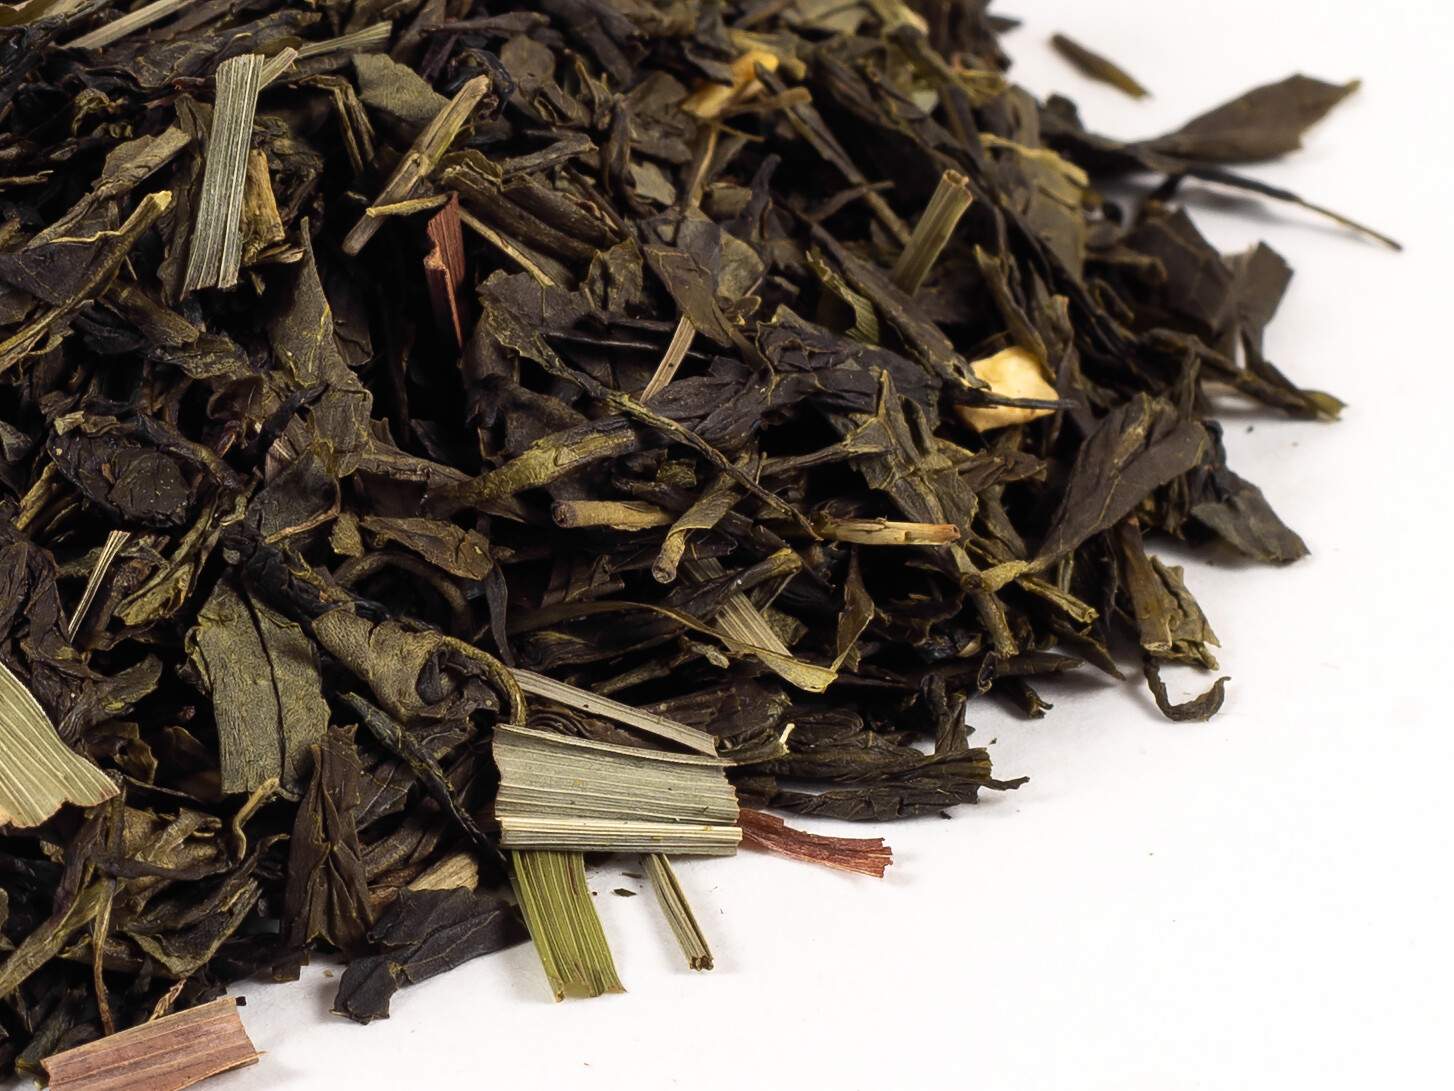 4125D Чай зеленый ароматизированный ПРЕМИУМ коллекция "Китайский лимонник"